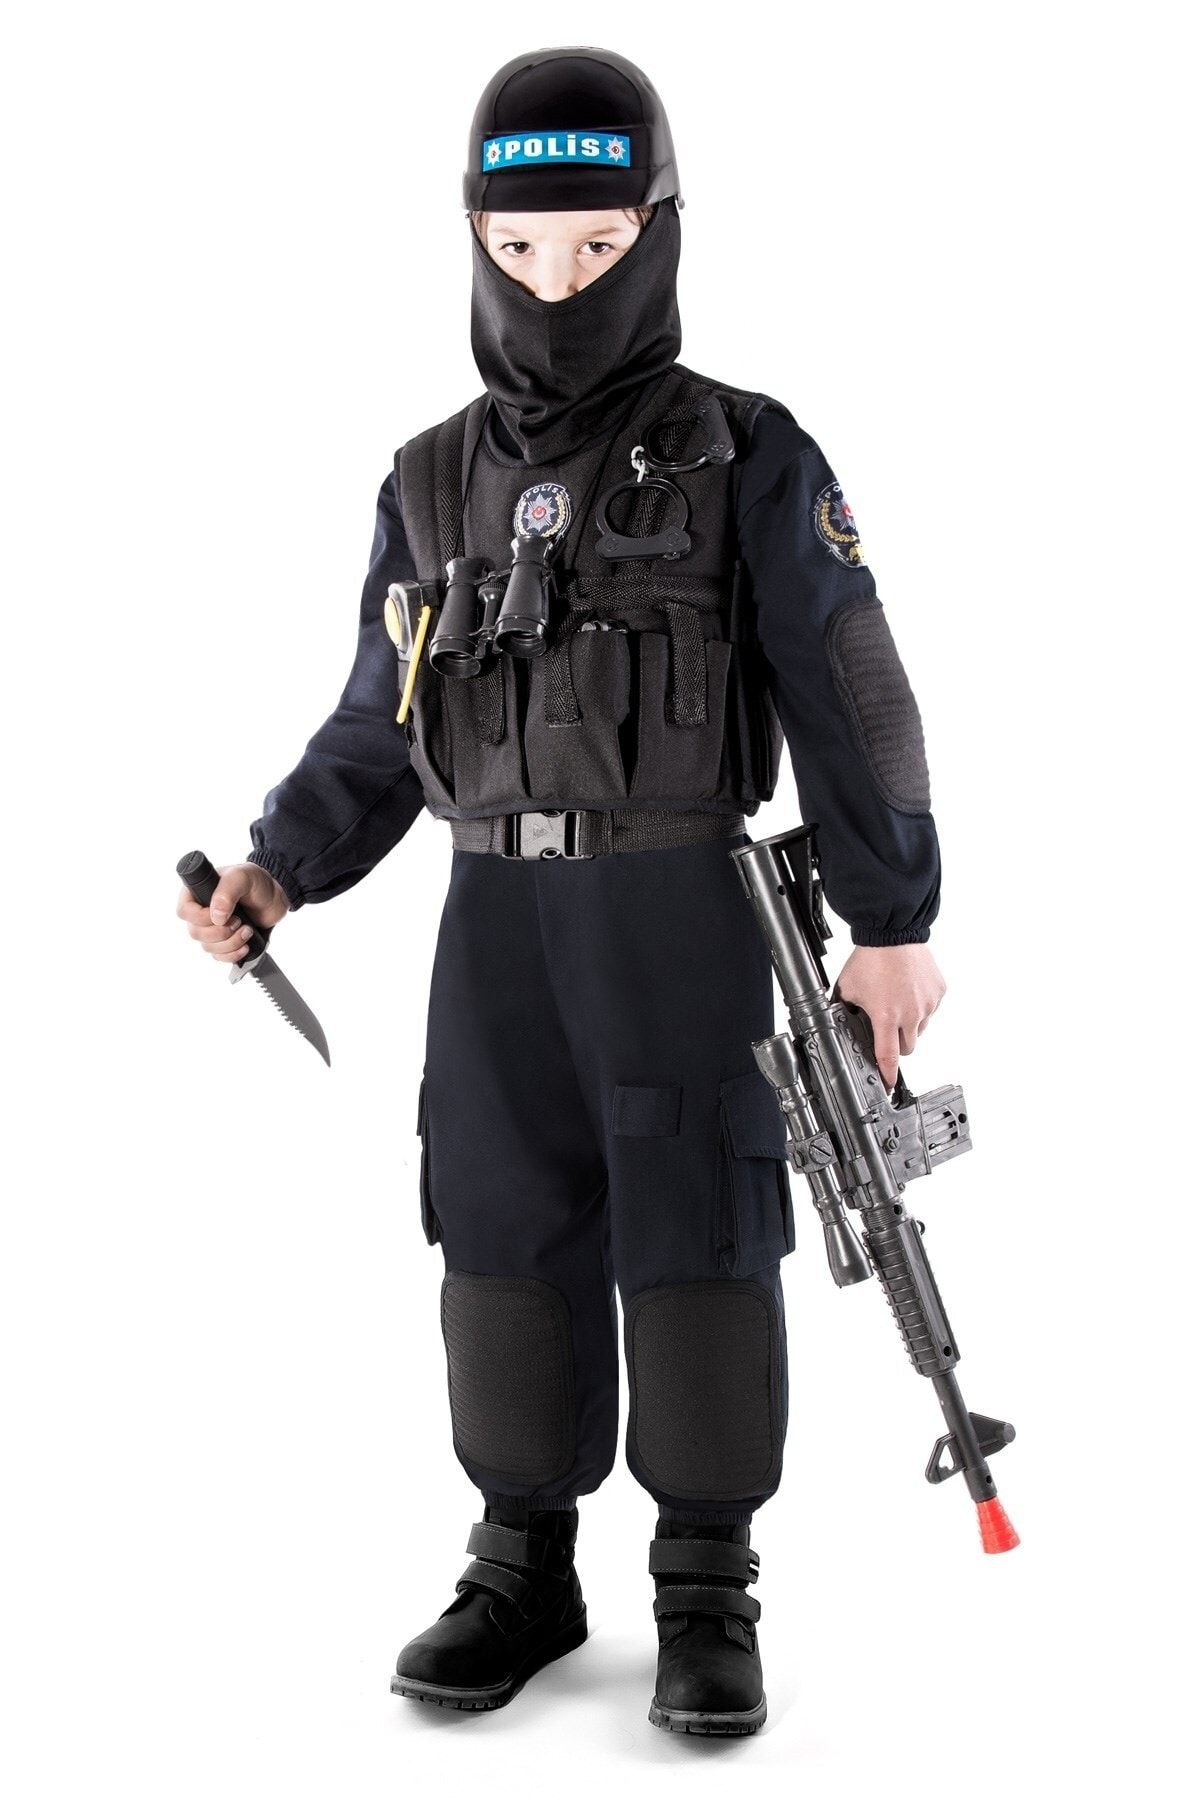 OULABİMİR Polis Kostümü Çocuk Özel Harekat Kıyafeti